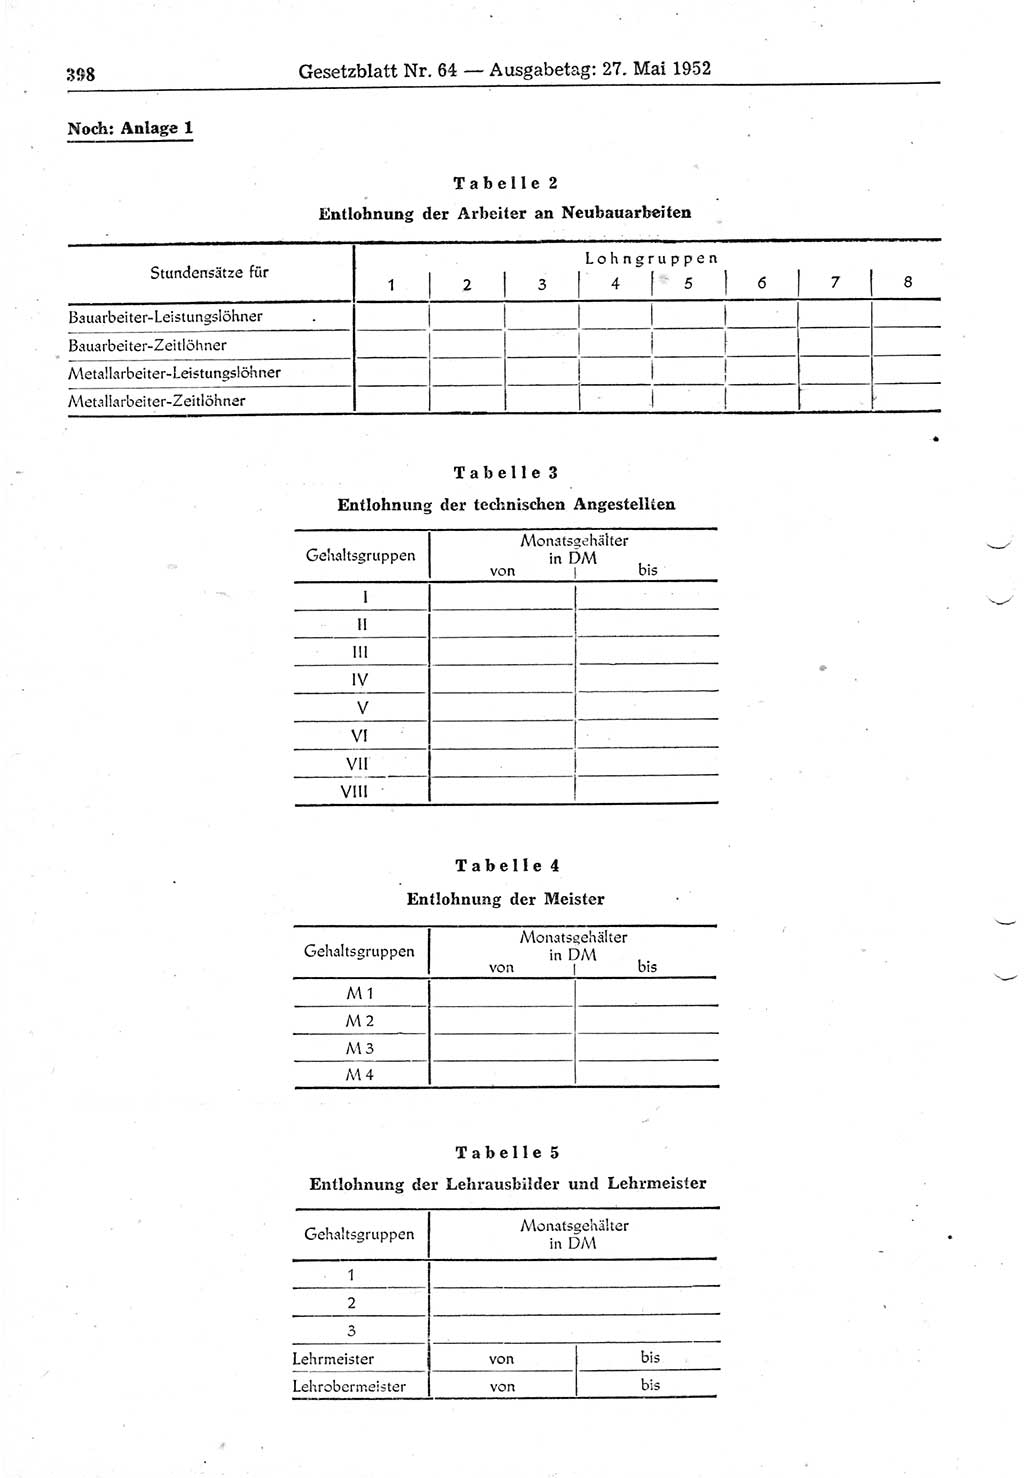 Gesetzblatt (GBl.) der Deutschen Demokratischen Republik (DDR) 1952, Seite 398 (GBl. DDR 1952, S. 398)